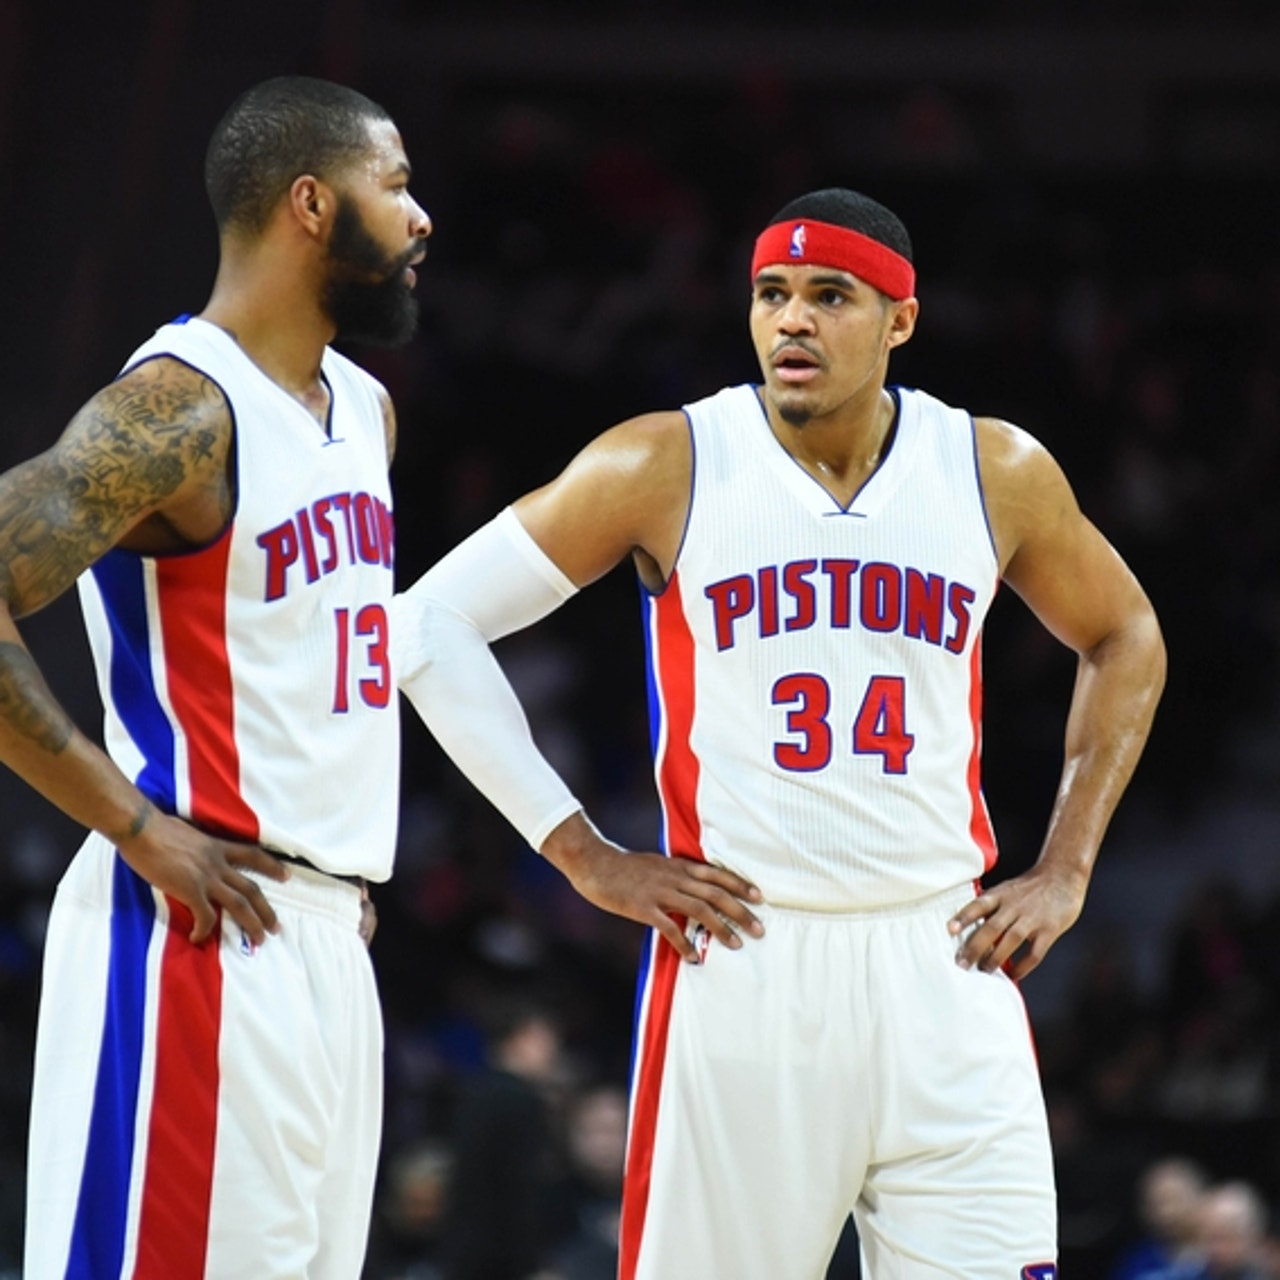 Meet new Detroit Pistons 3-point threat Joe Harris